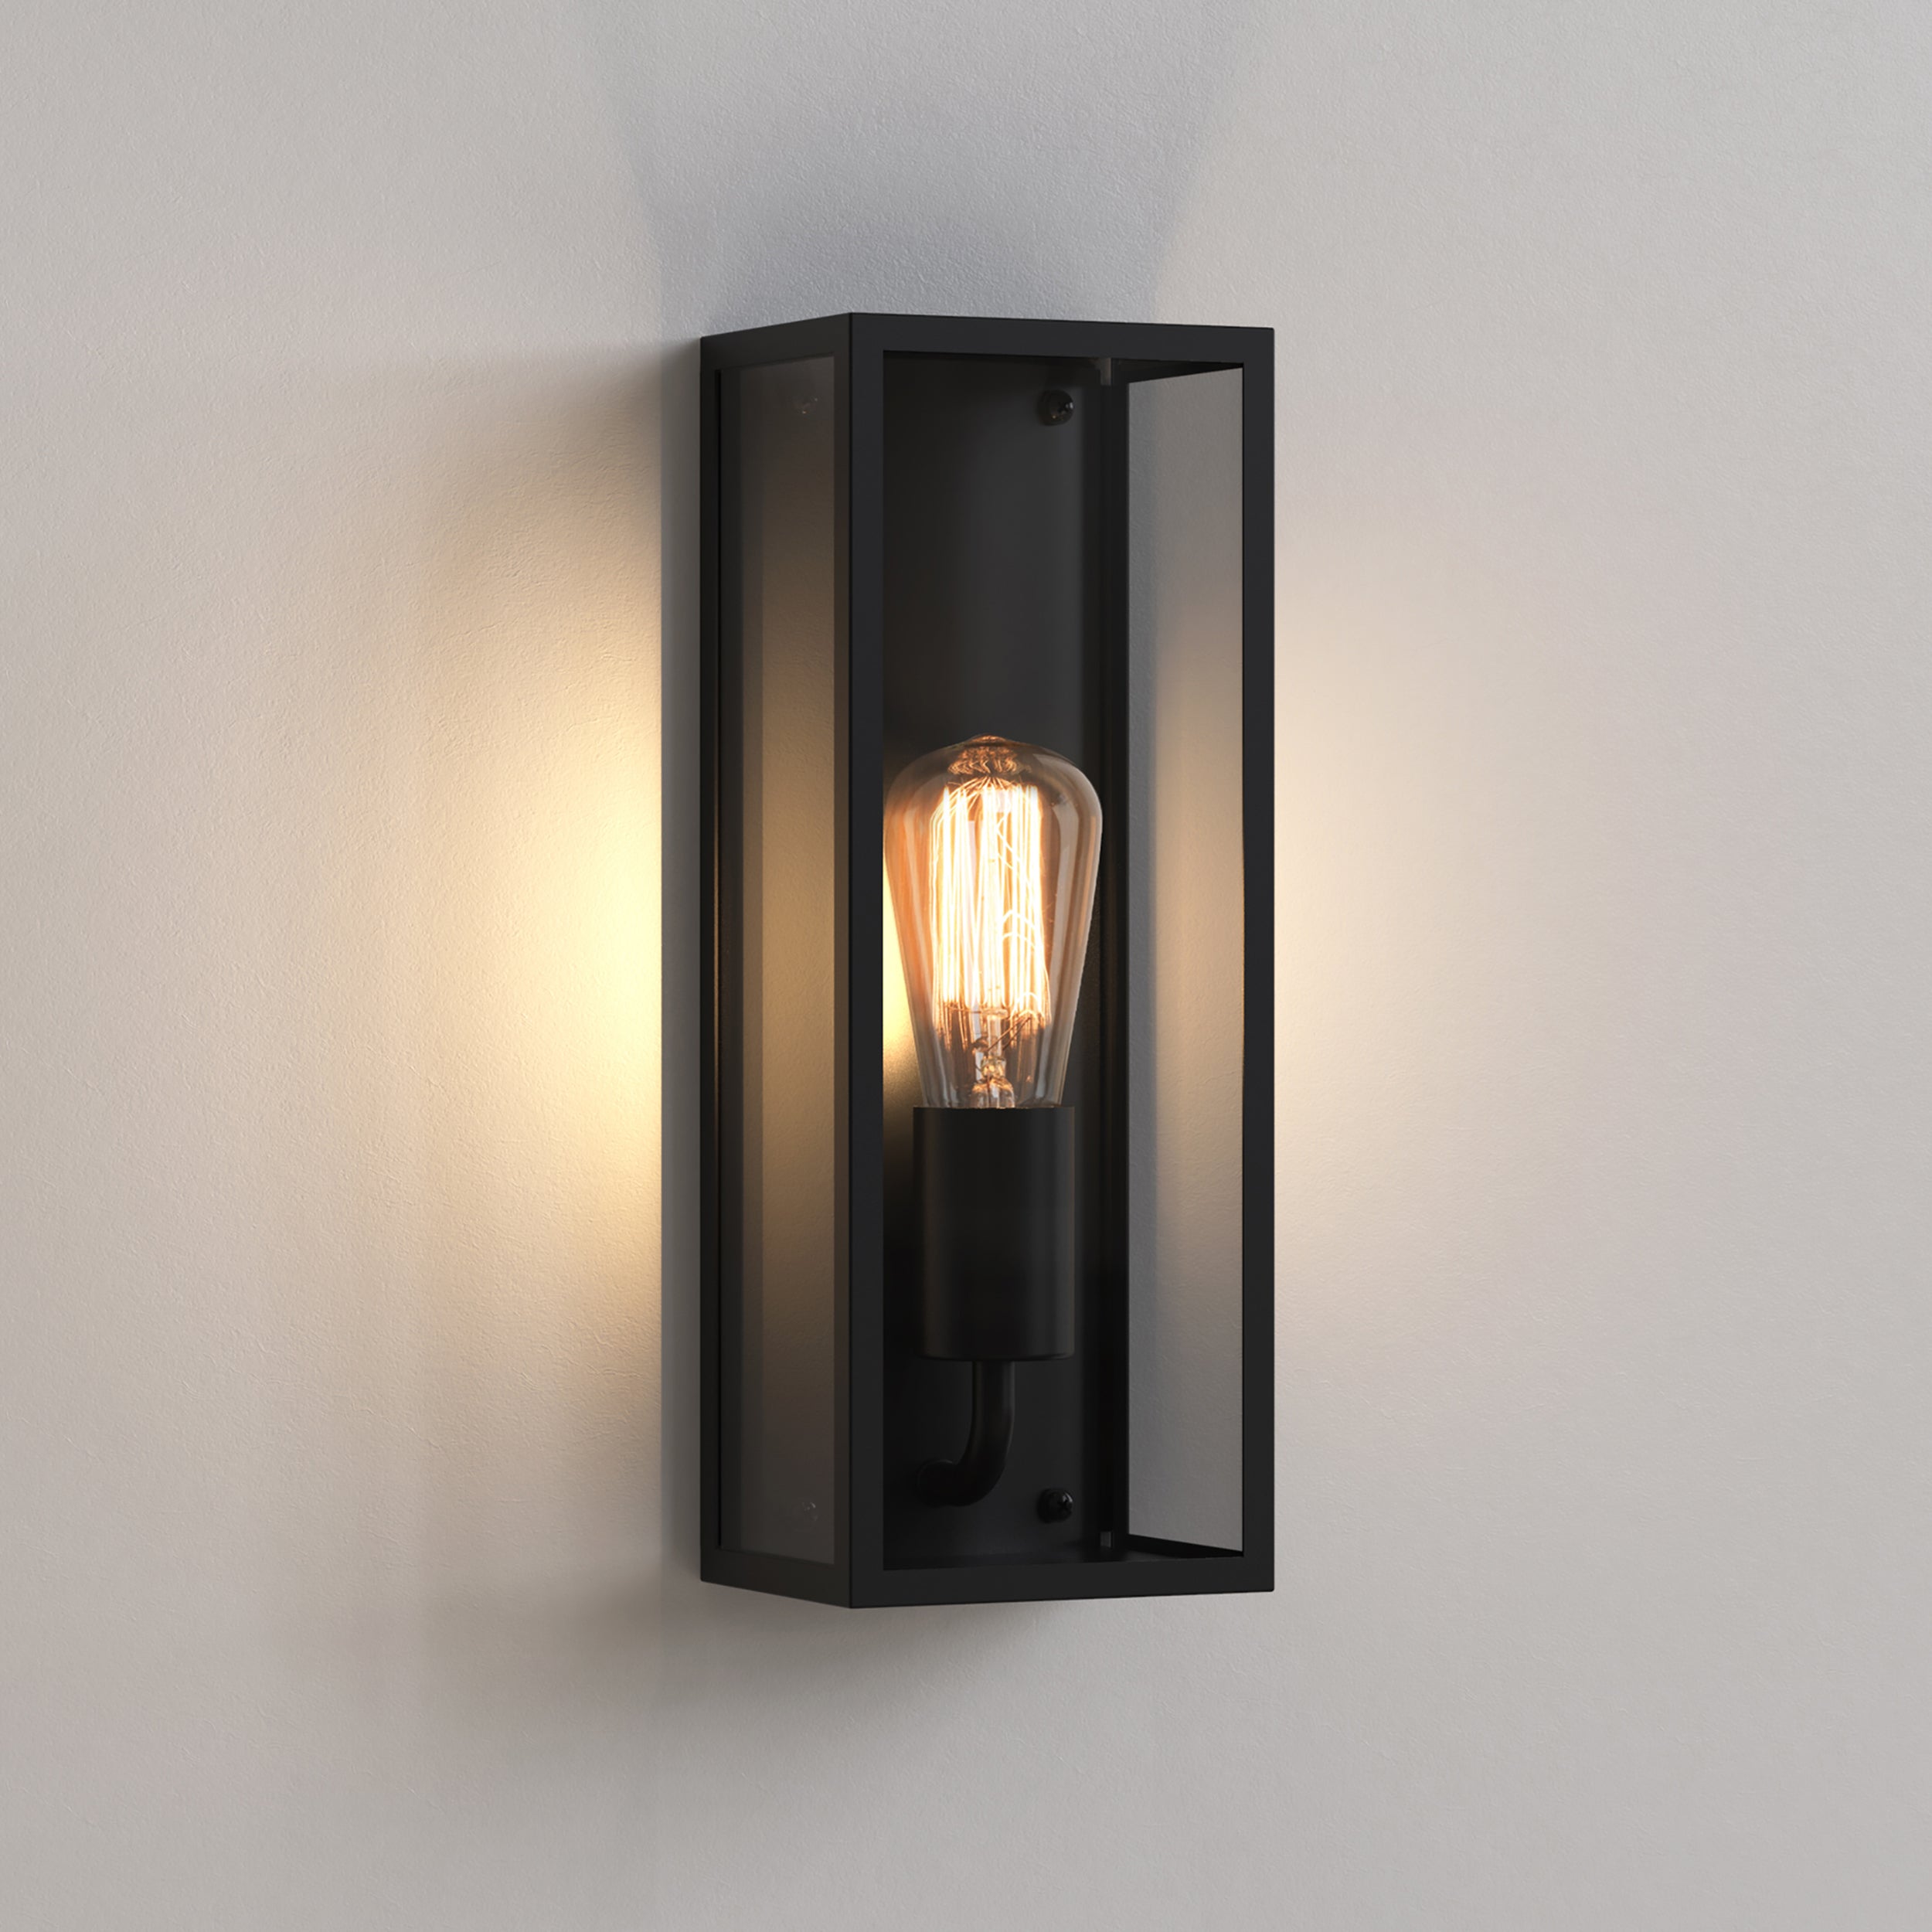 Aflang firkantet udendørslampe med sort stålramme og glassider femvist med en "glødepære".